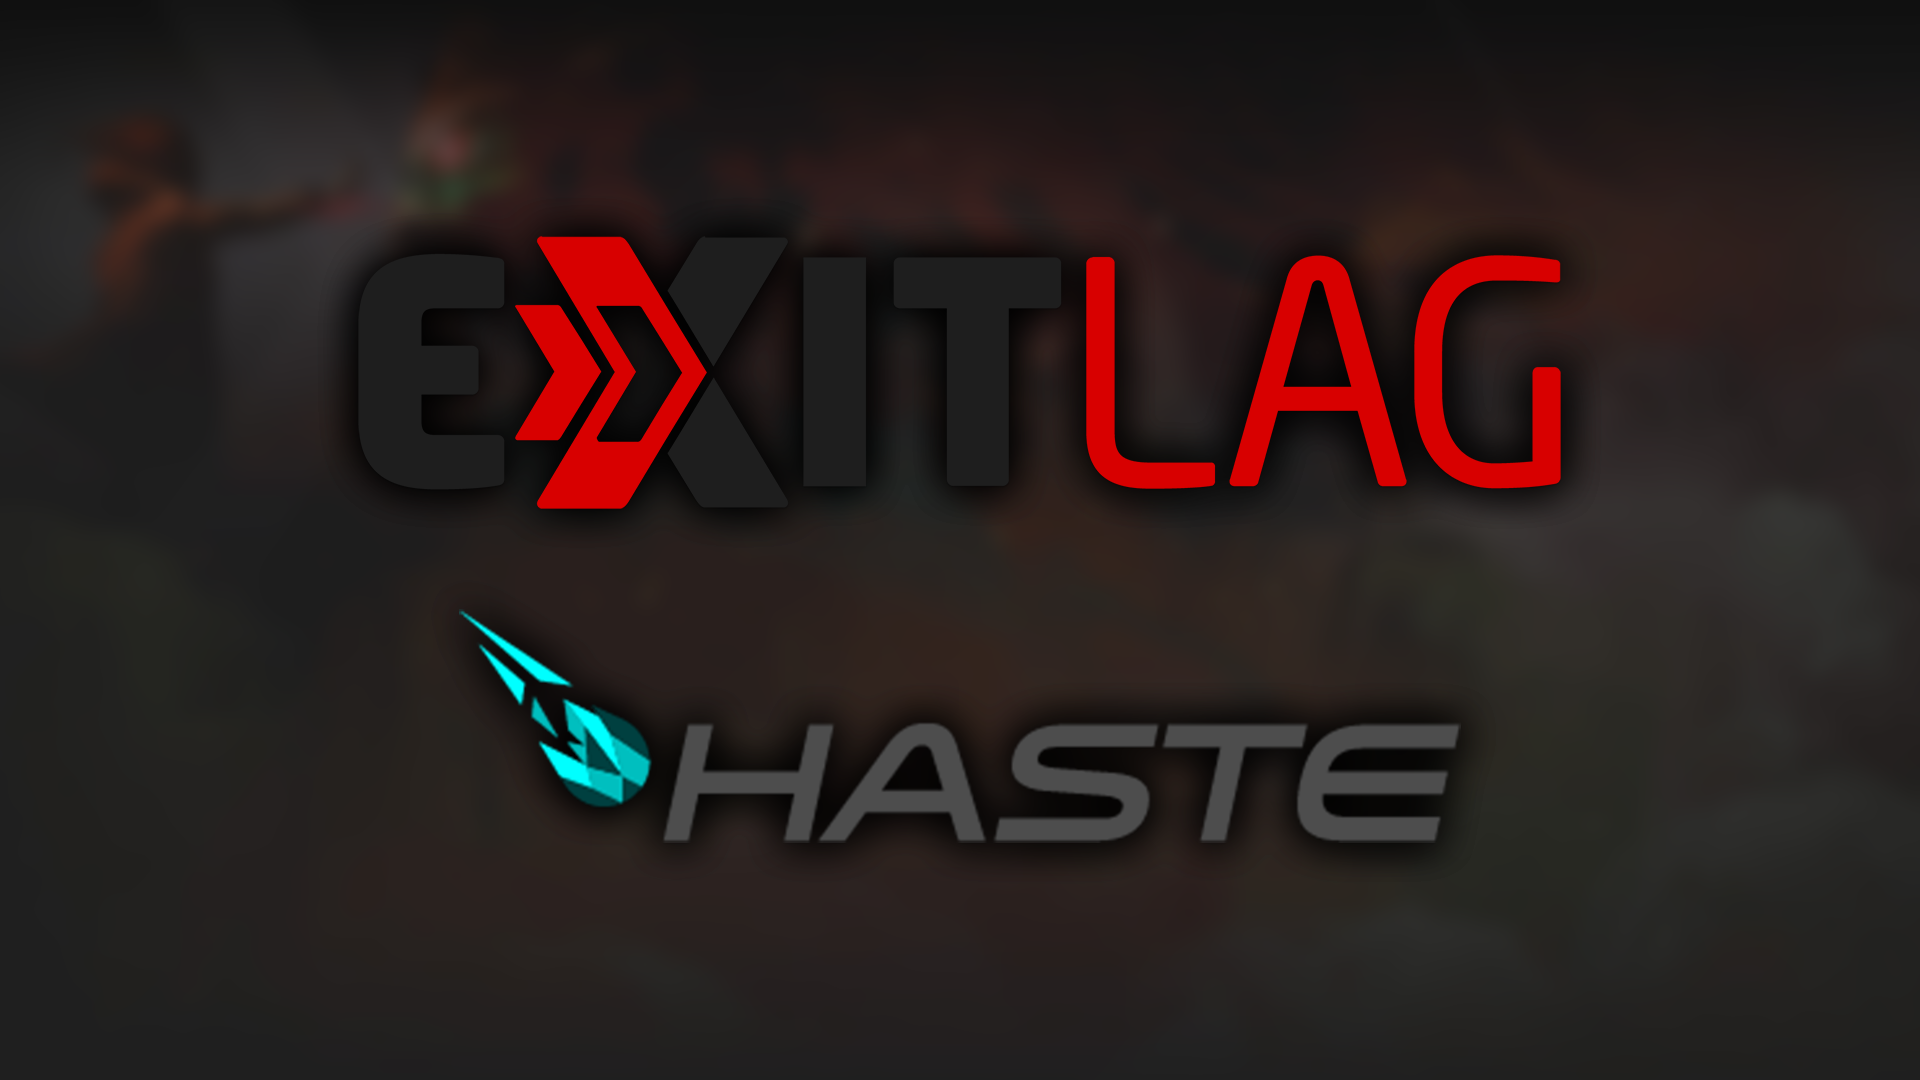 ExitLag Haste